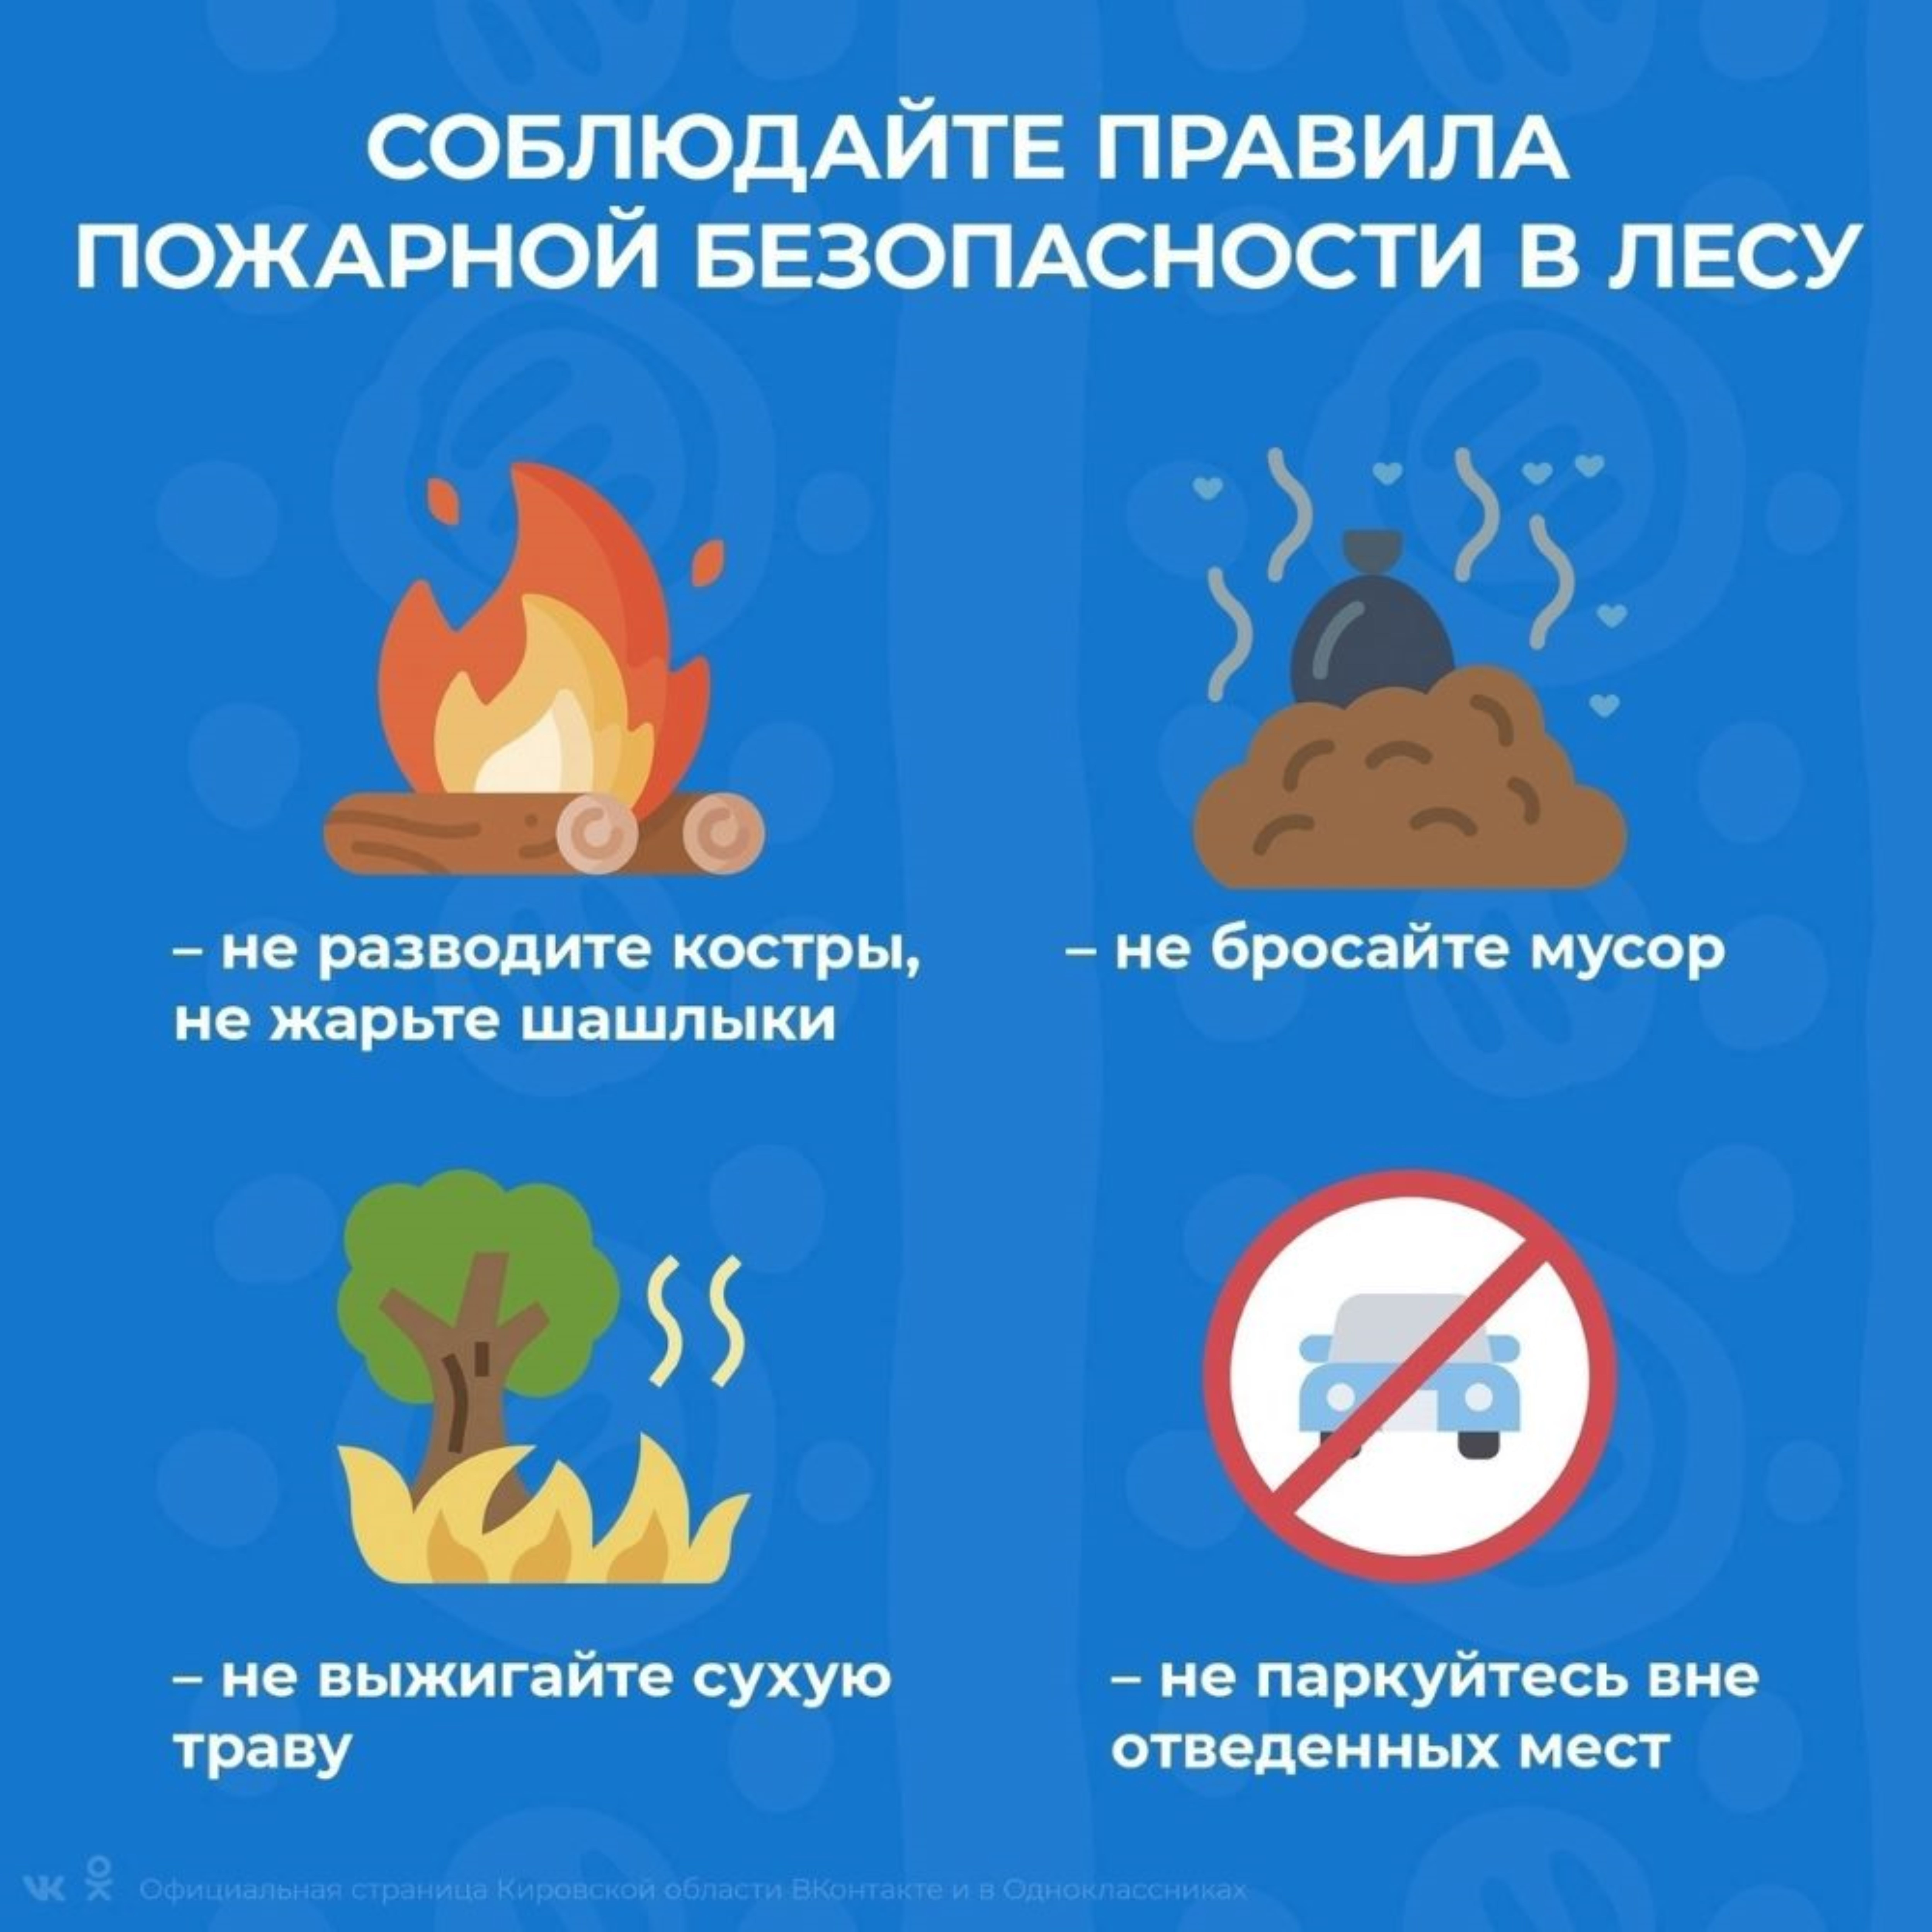 Соблюдайте правила пожарной безопасности при отдыхе на природе.